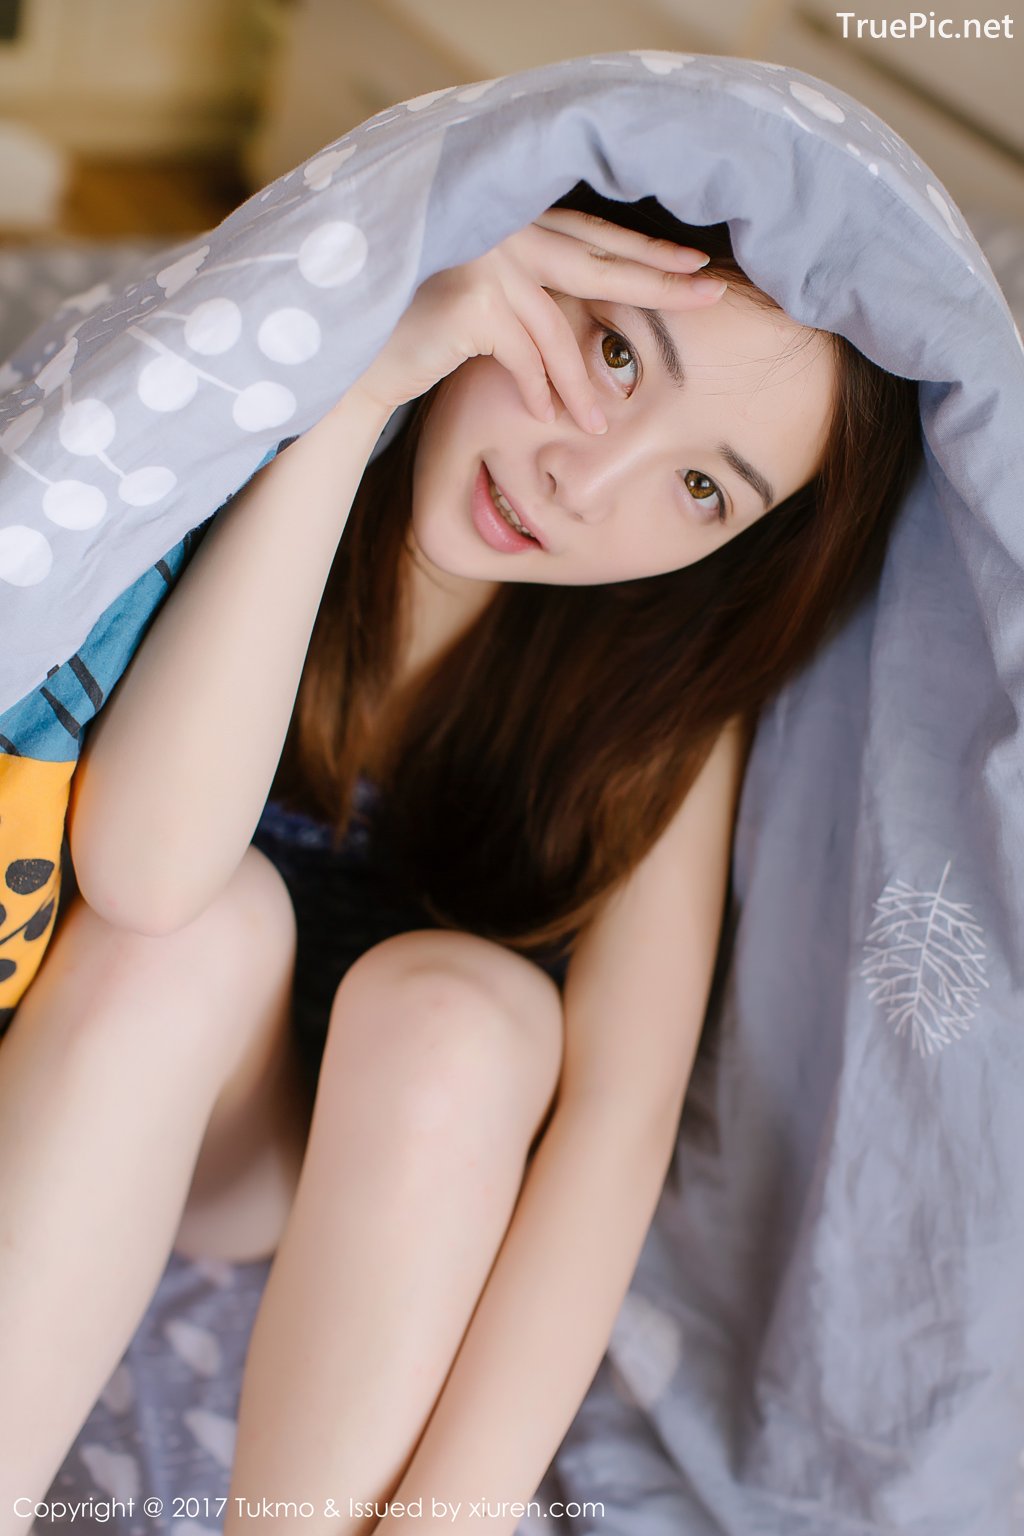 Image-Tukmo-Vol-096-Model-Mian-Mian-绵绵-Cute-Cherry-Girl-TruePic.net- Picture-33